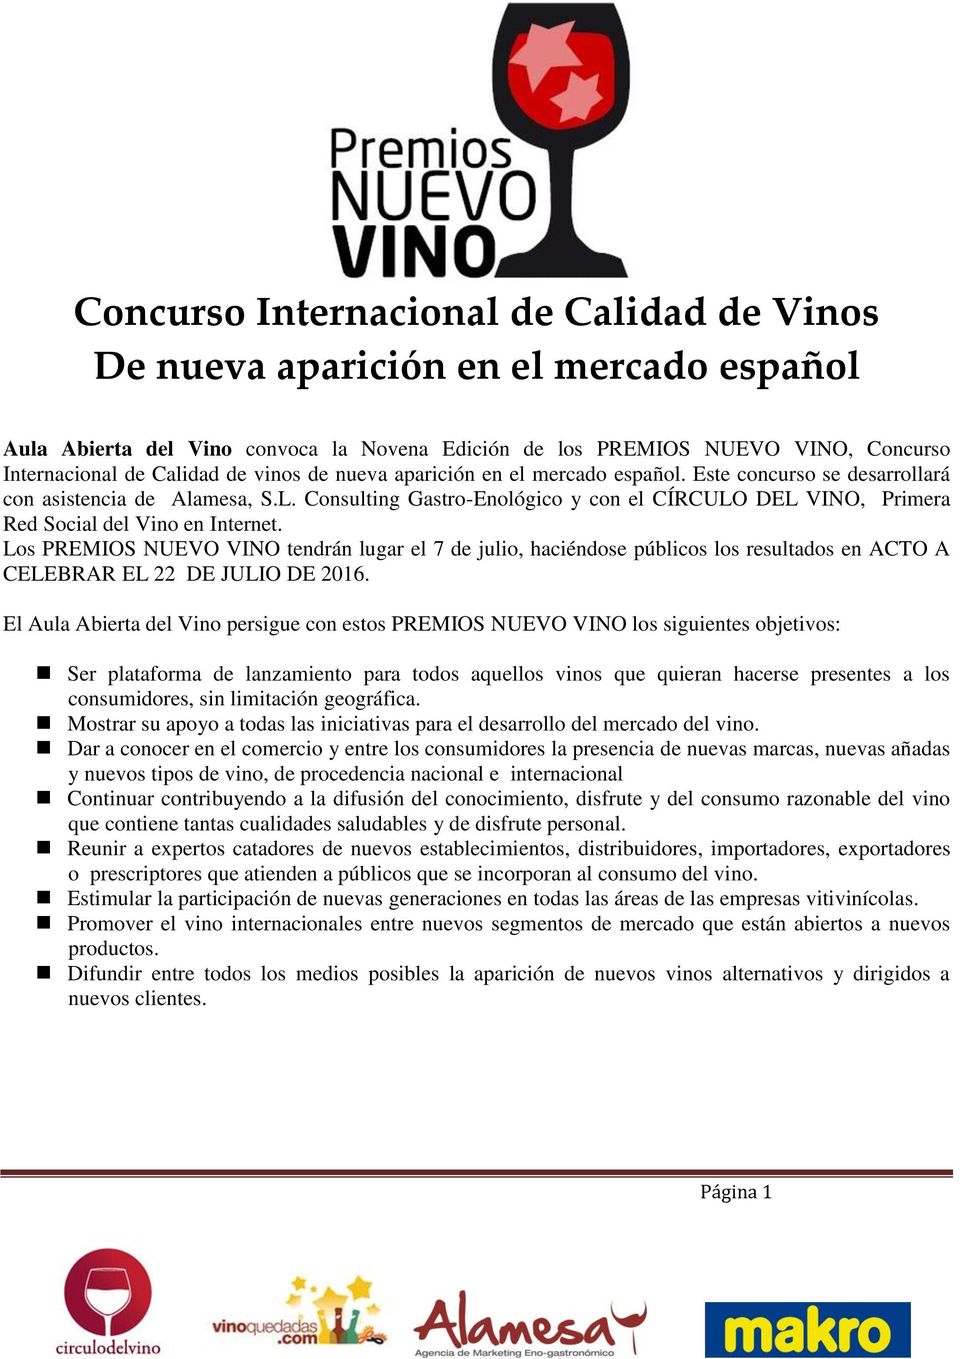 Consulting Gastro-Enológico y con el CÍRCULO DEL VINO, Primera Red Social del Vino en Internet.